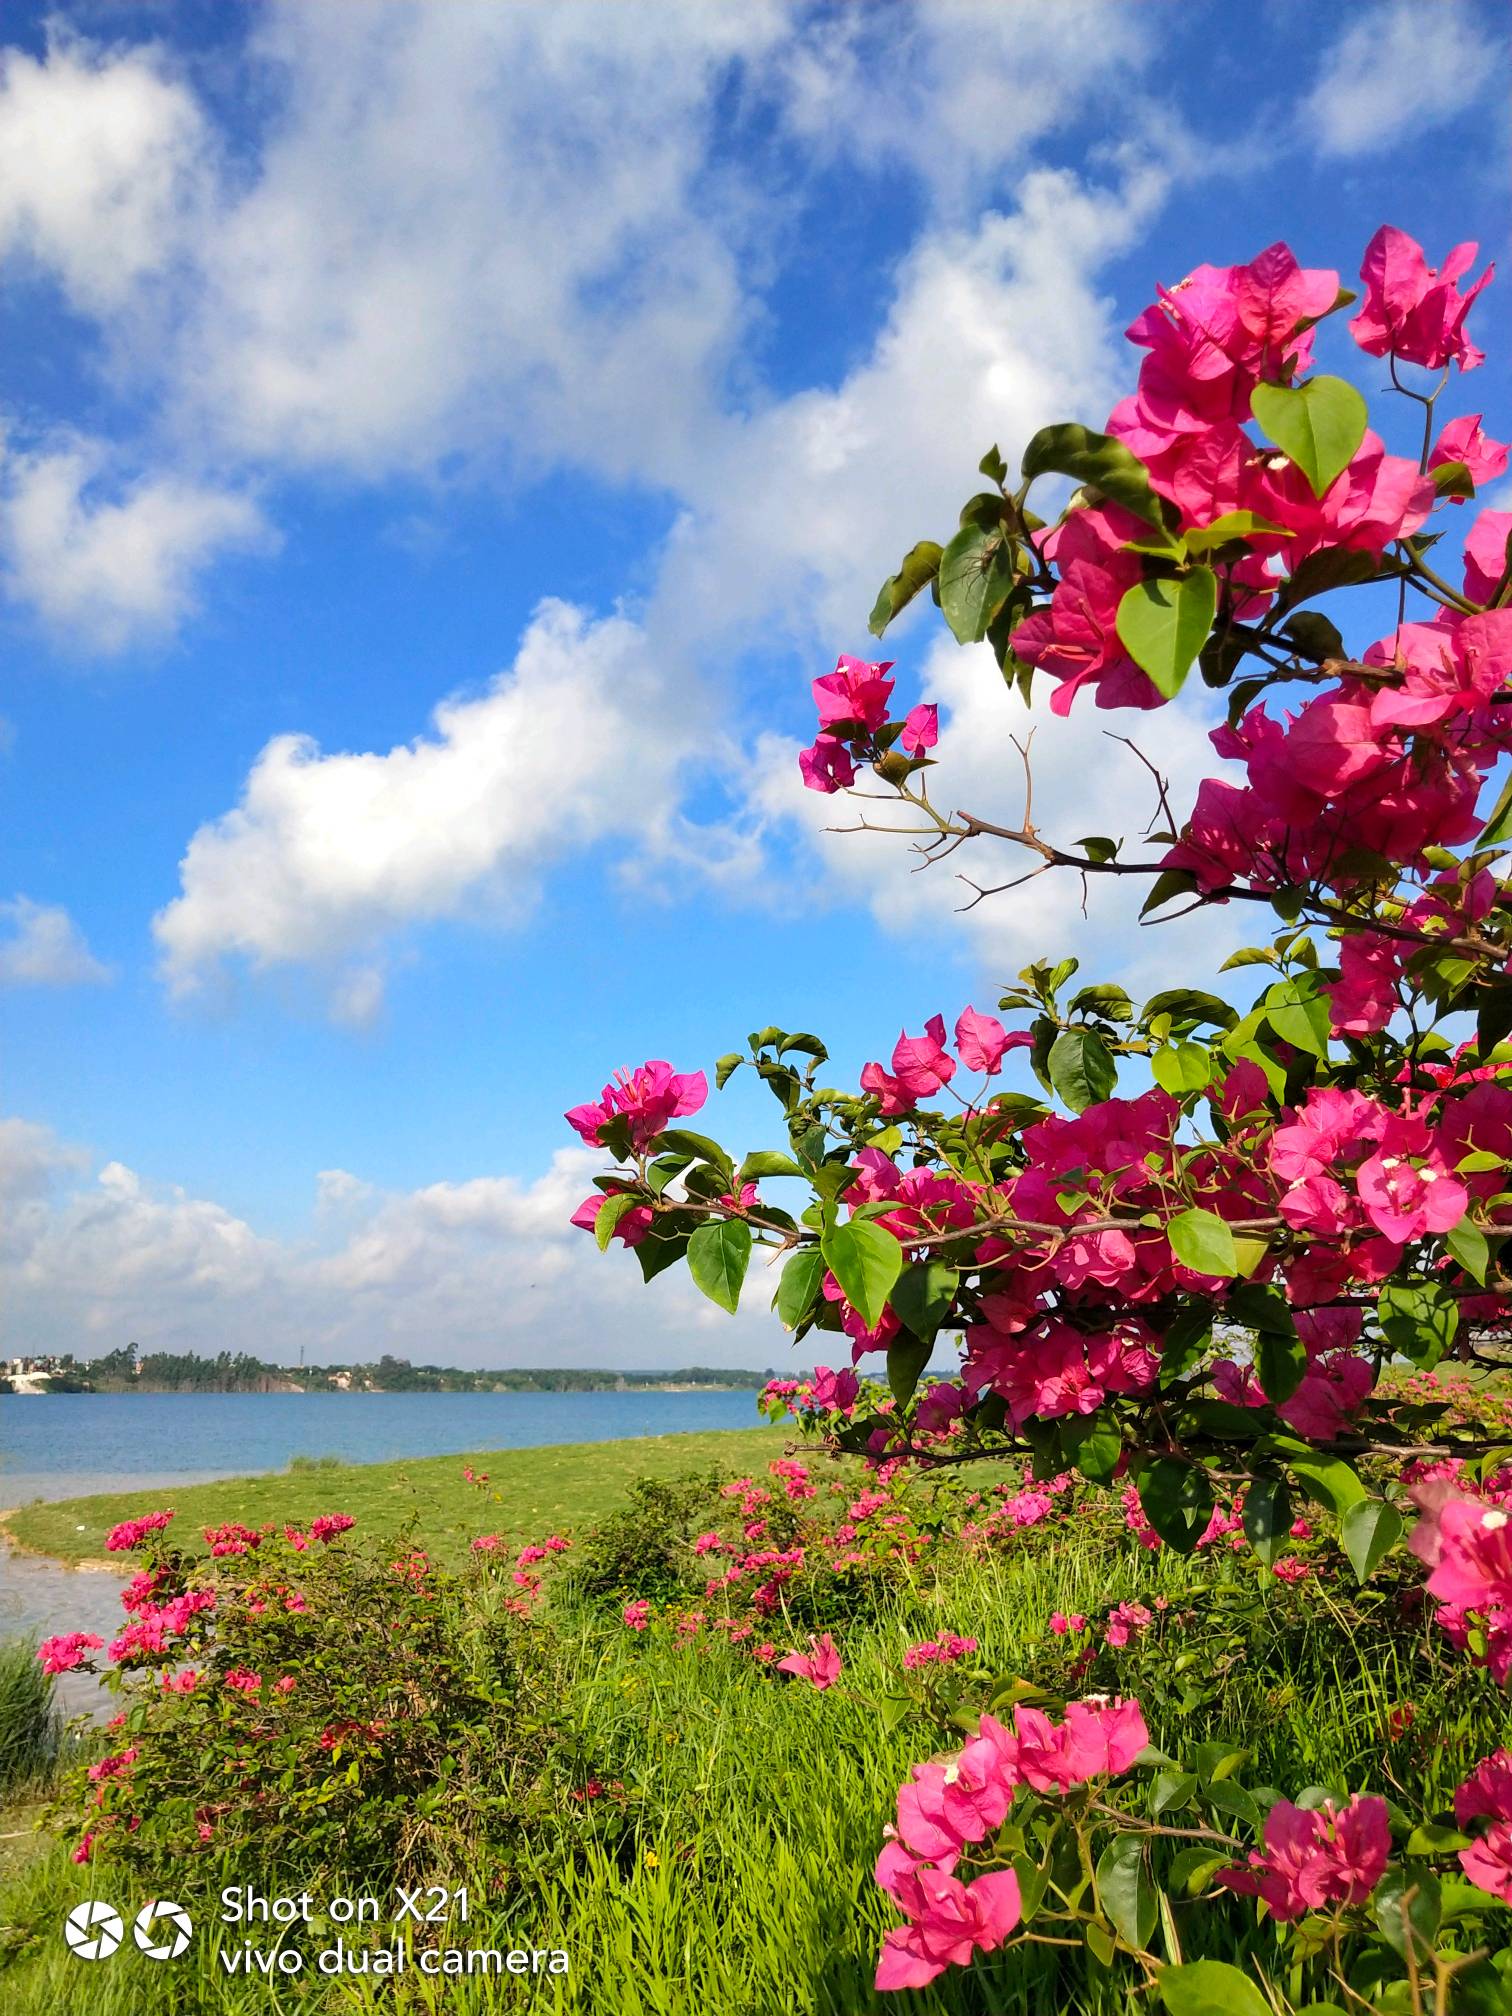 夏日盛开的花朵,在蓝天白云衬托下,组成了一幅美丽的风景.